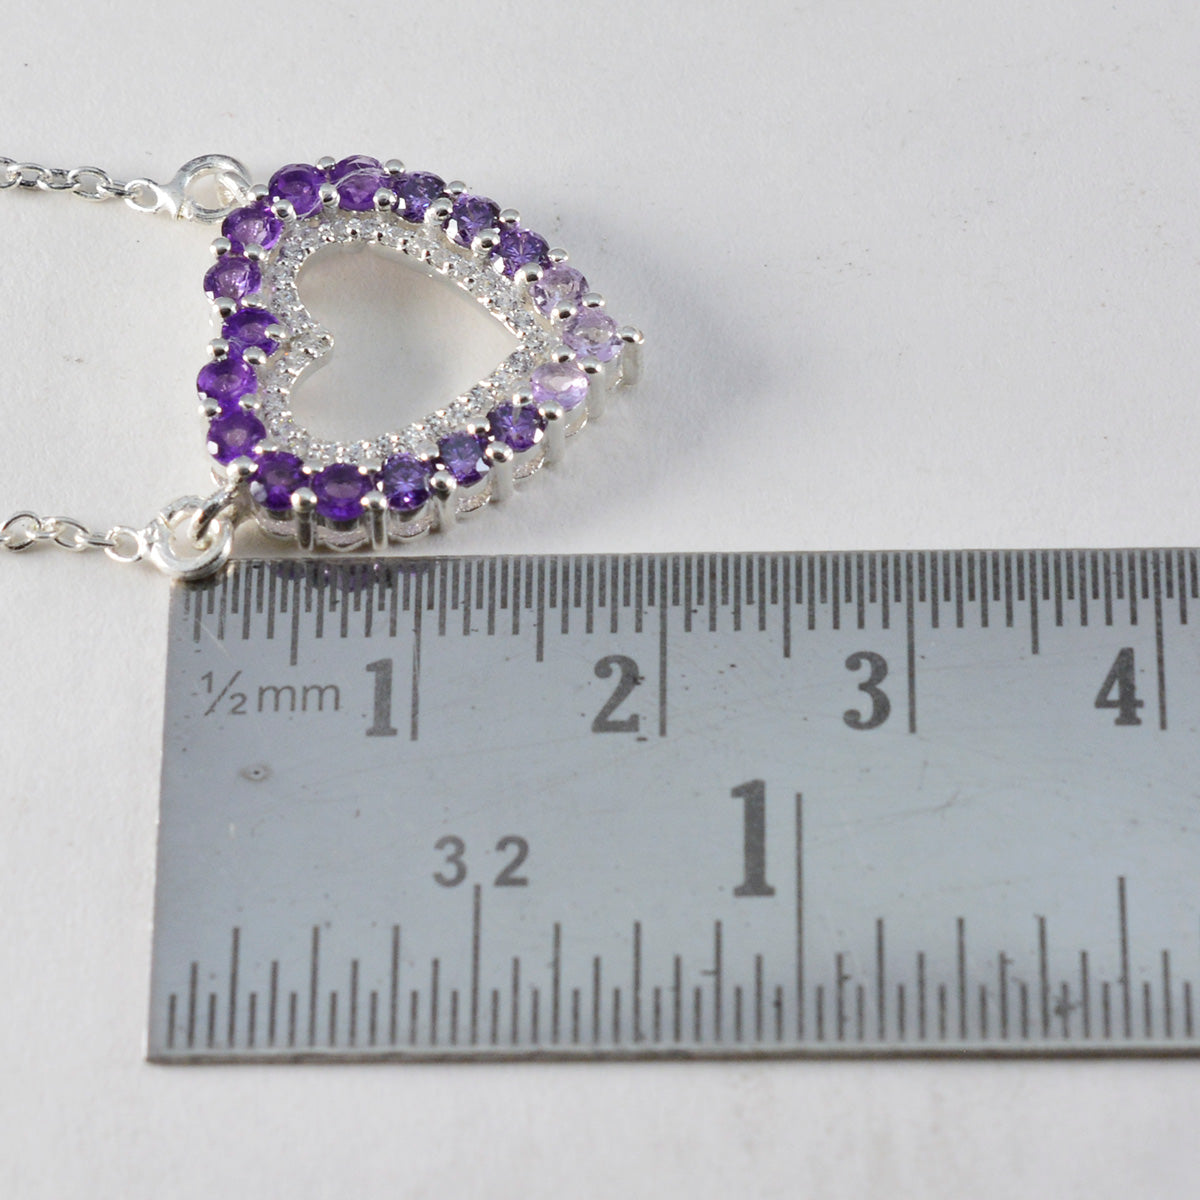 Серебряный кулон riyo с красивыми драгоценными камнями, круглый граненый фиолетовый аметист, подарок сестре